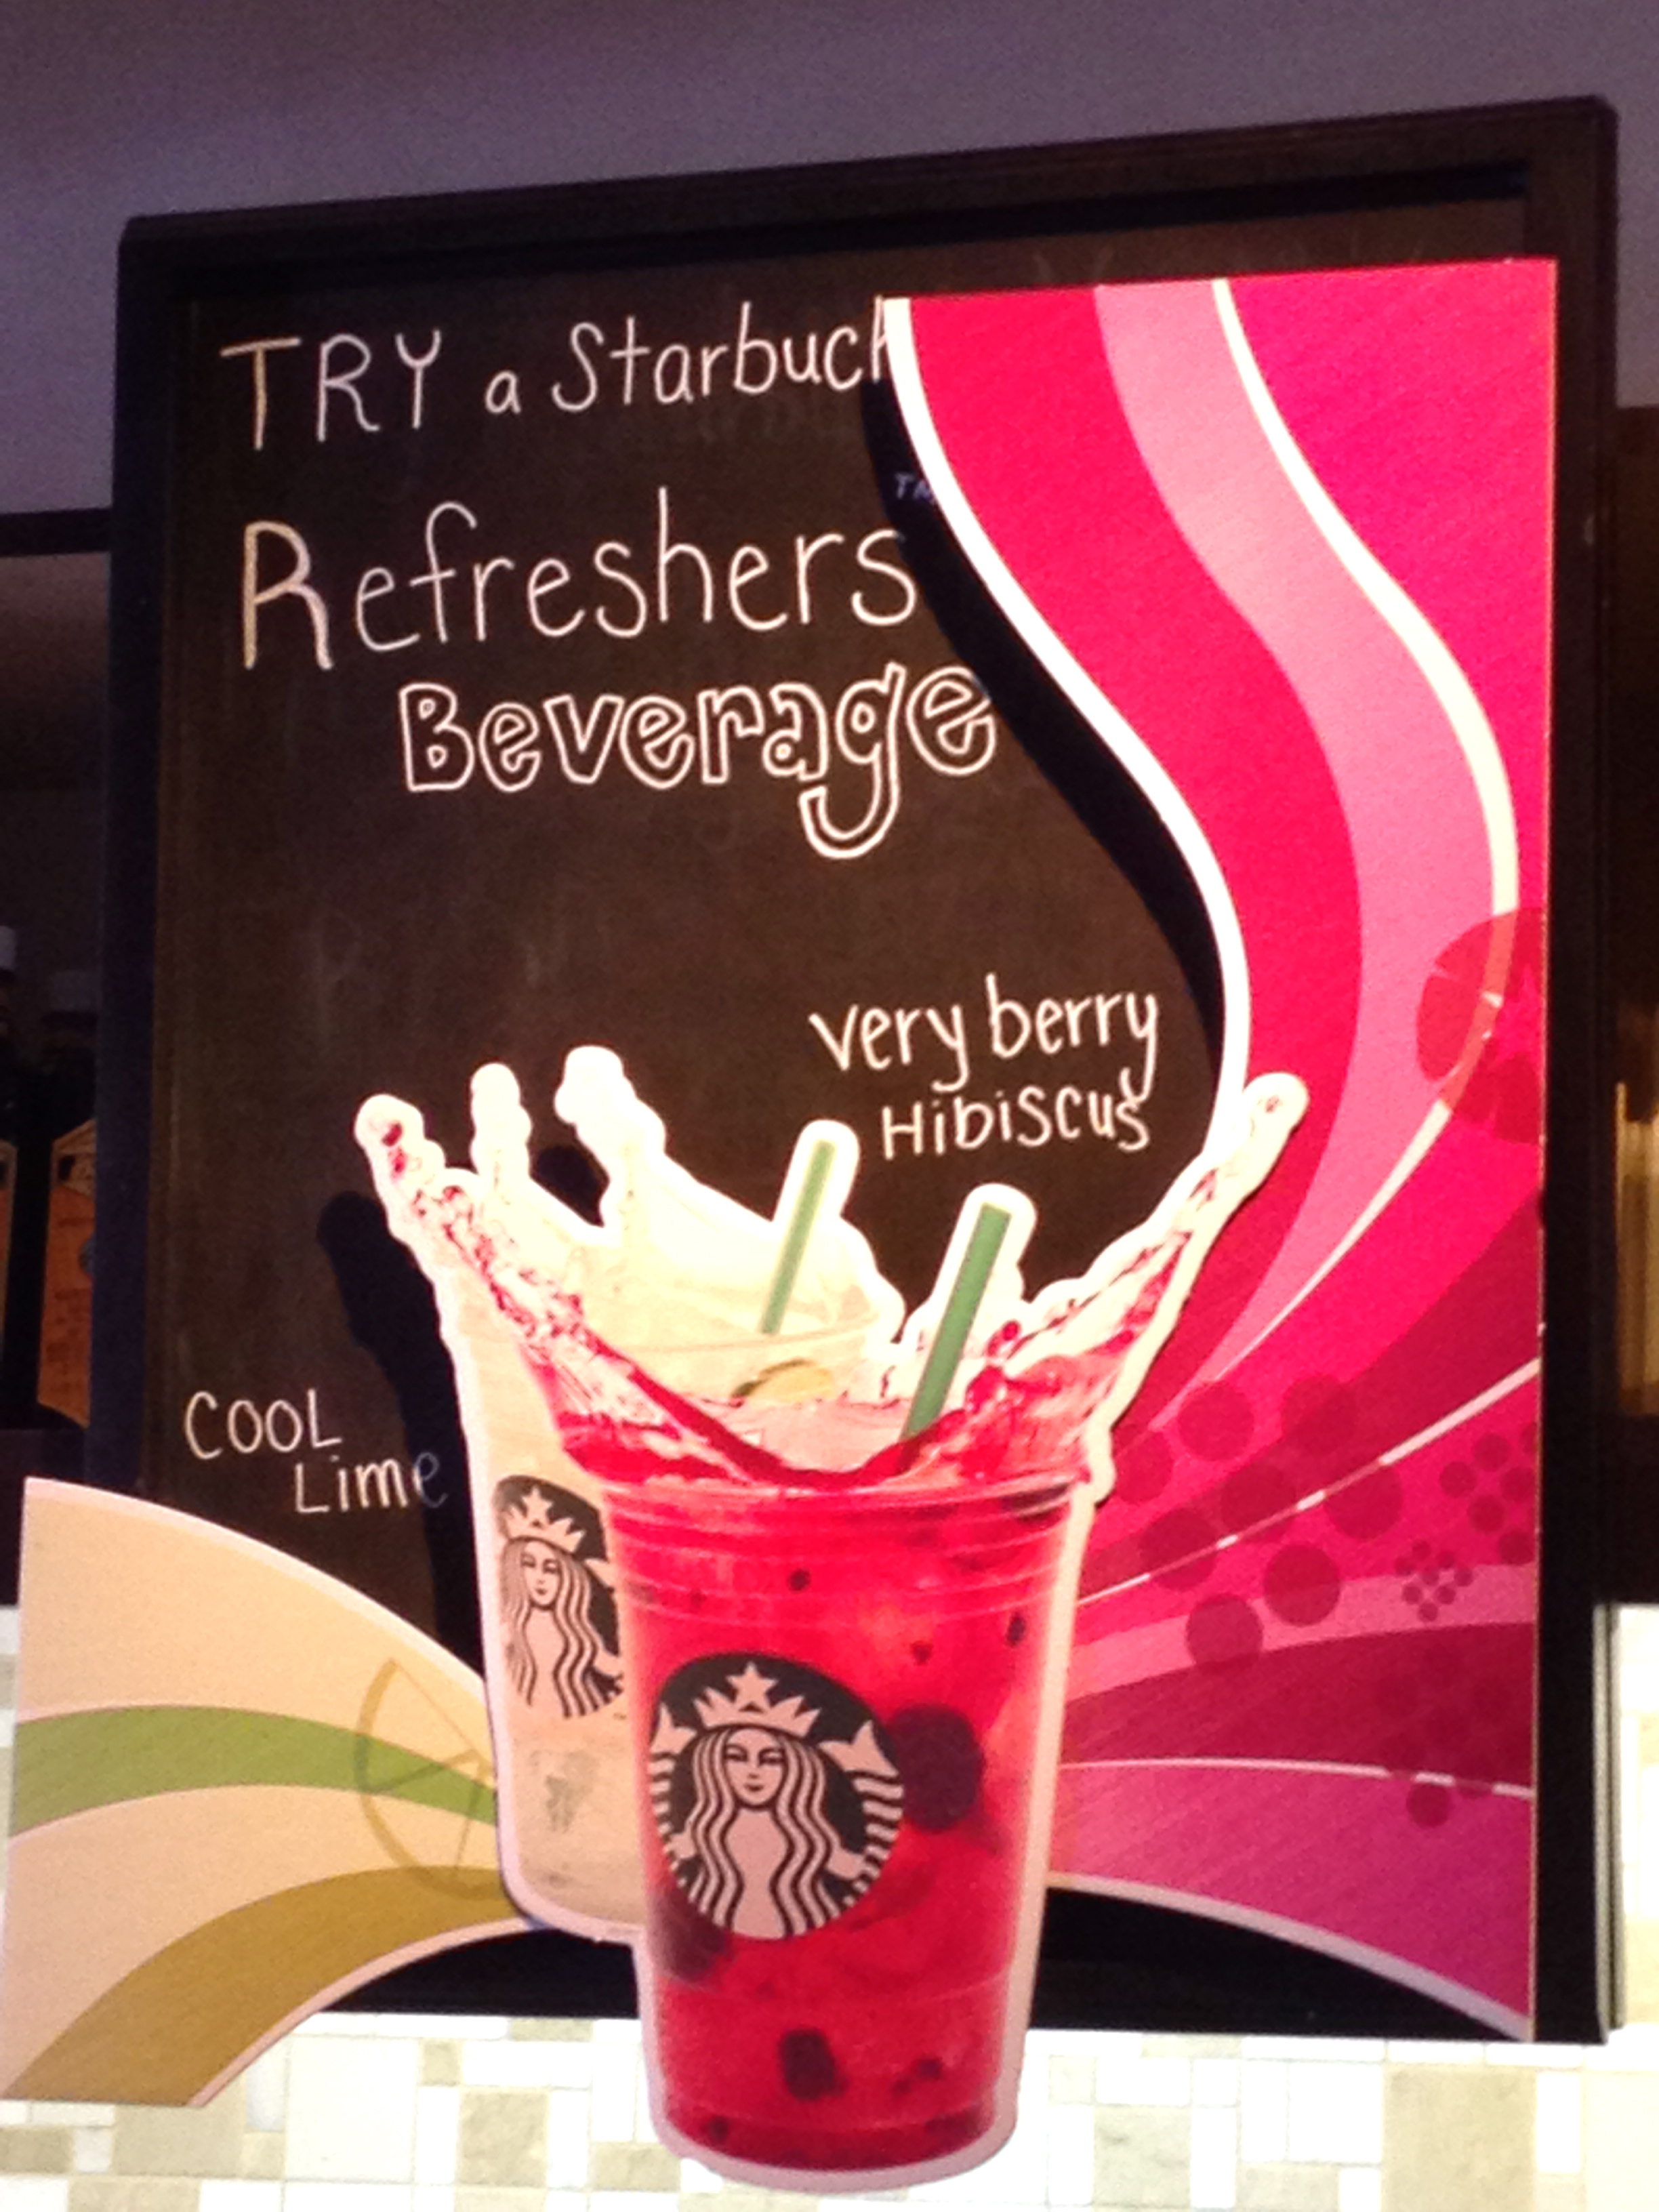 BEWARE of Starbucks “Refreshers”